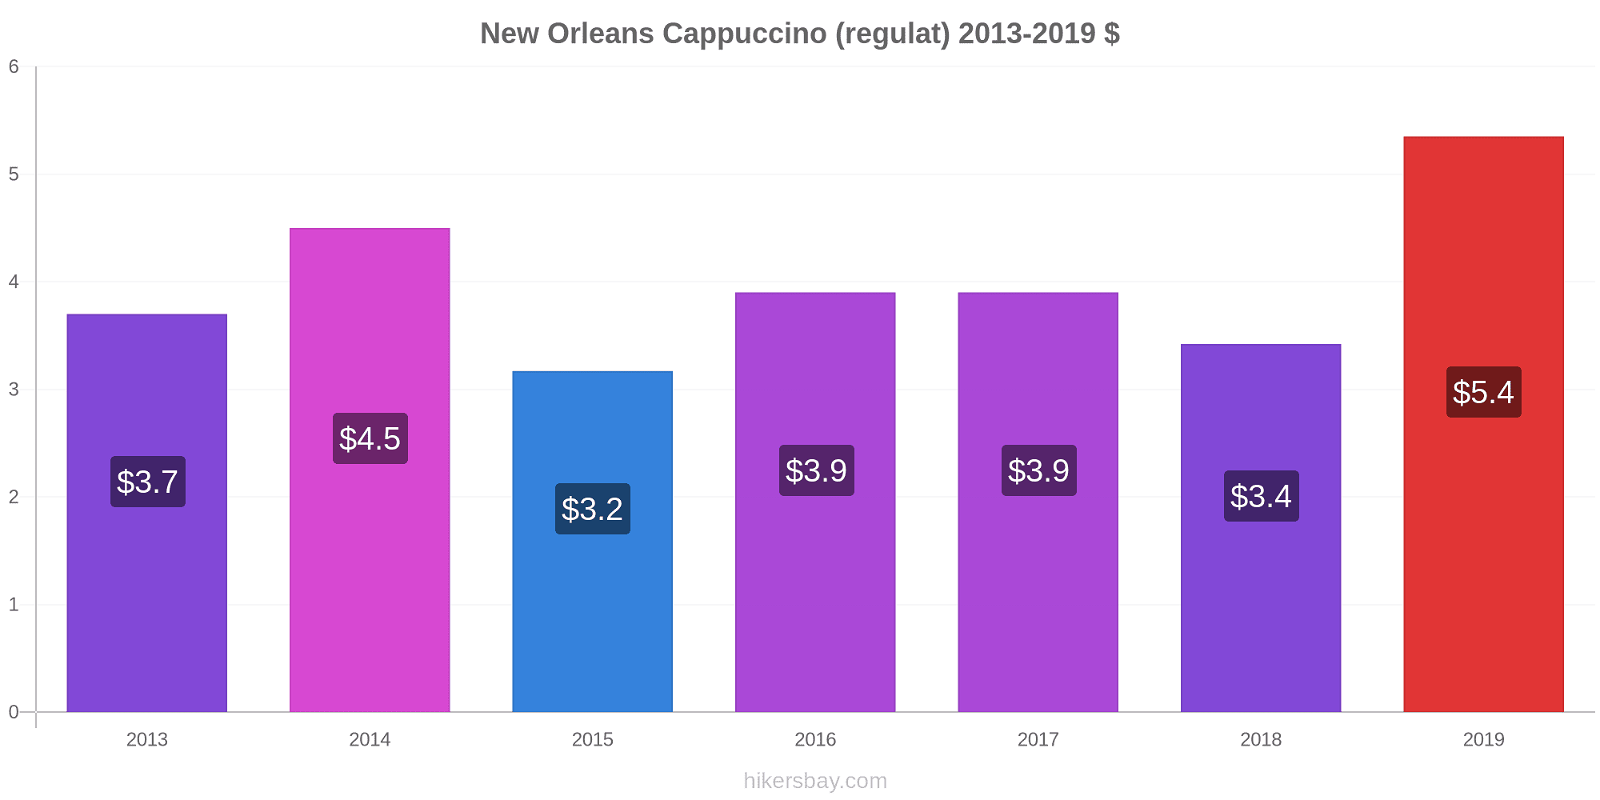 New Orleans modificări de preț Cappuccino (regulat) hikersbay.com